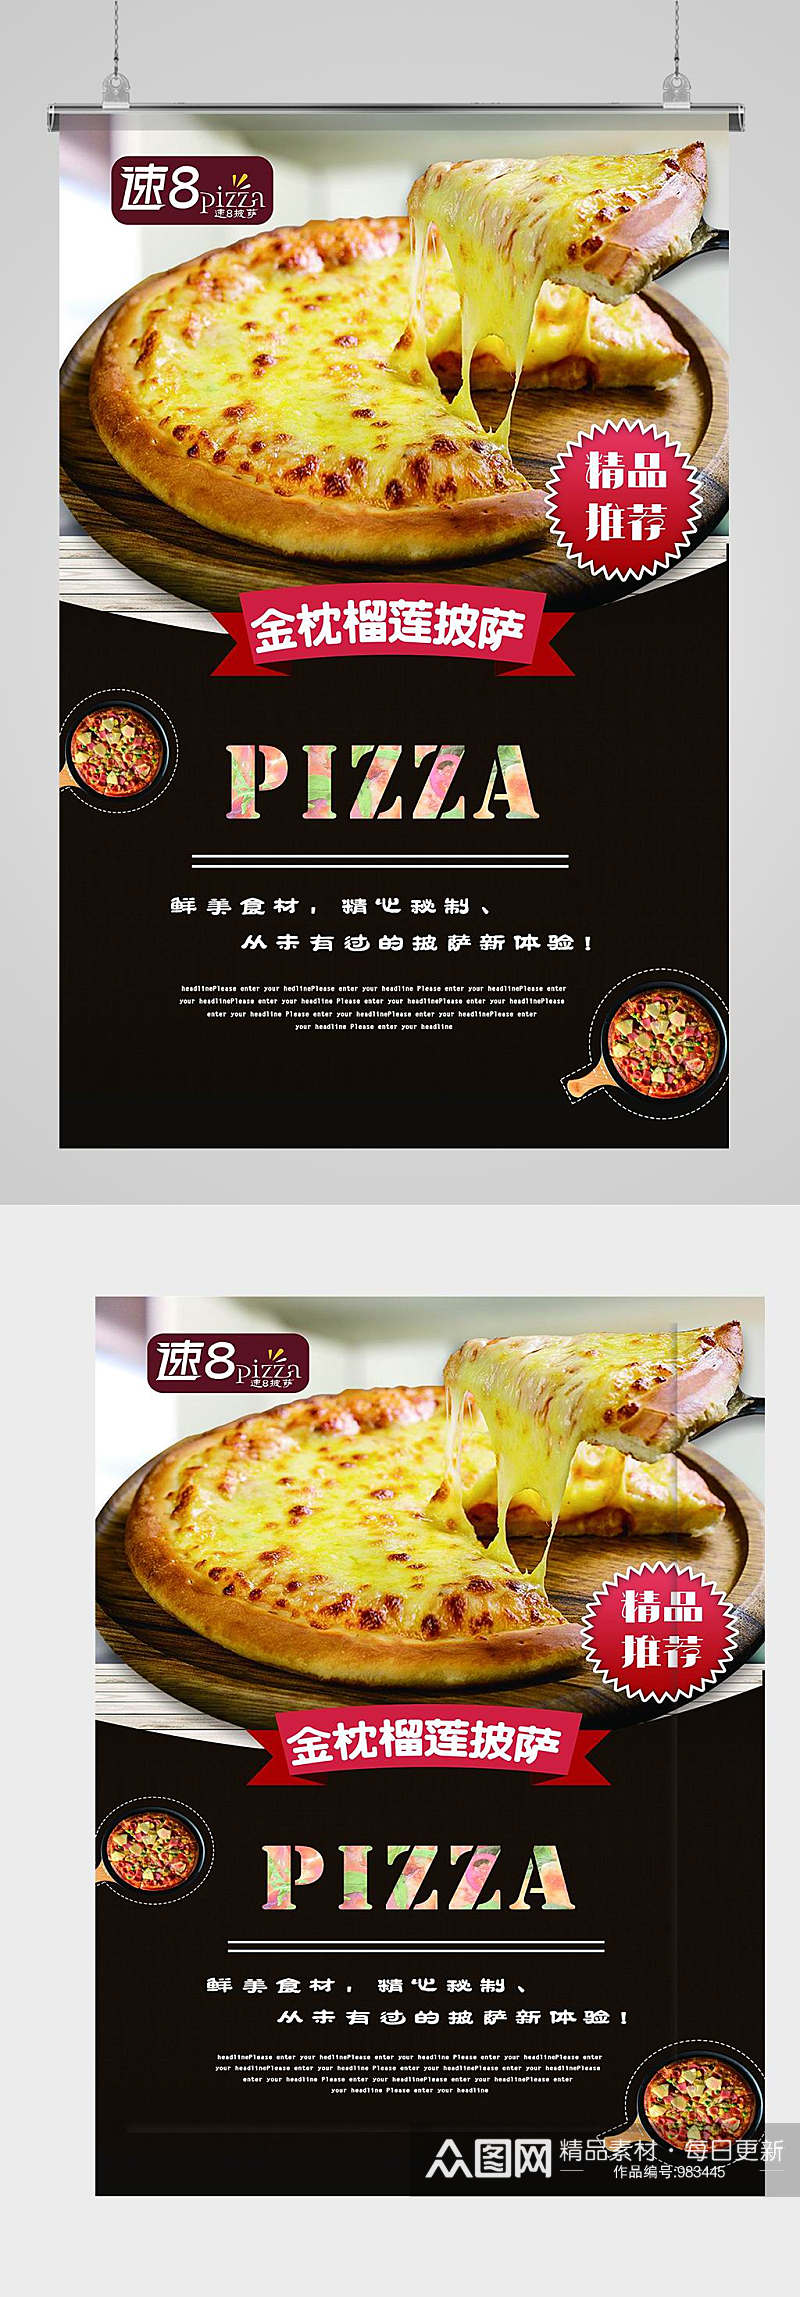 披萨宣传海报设计素材